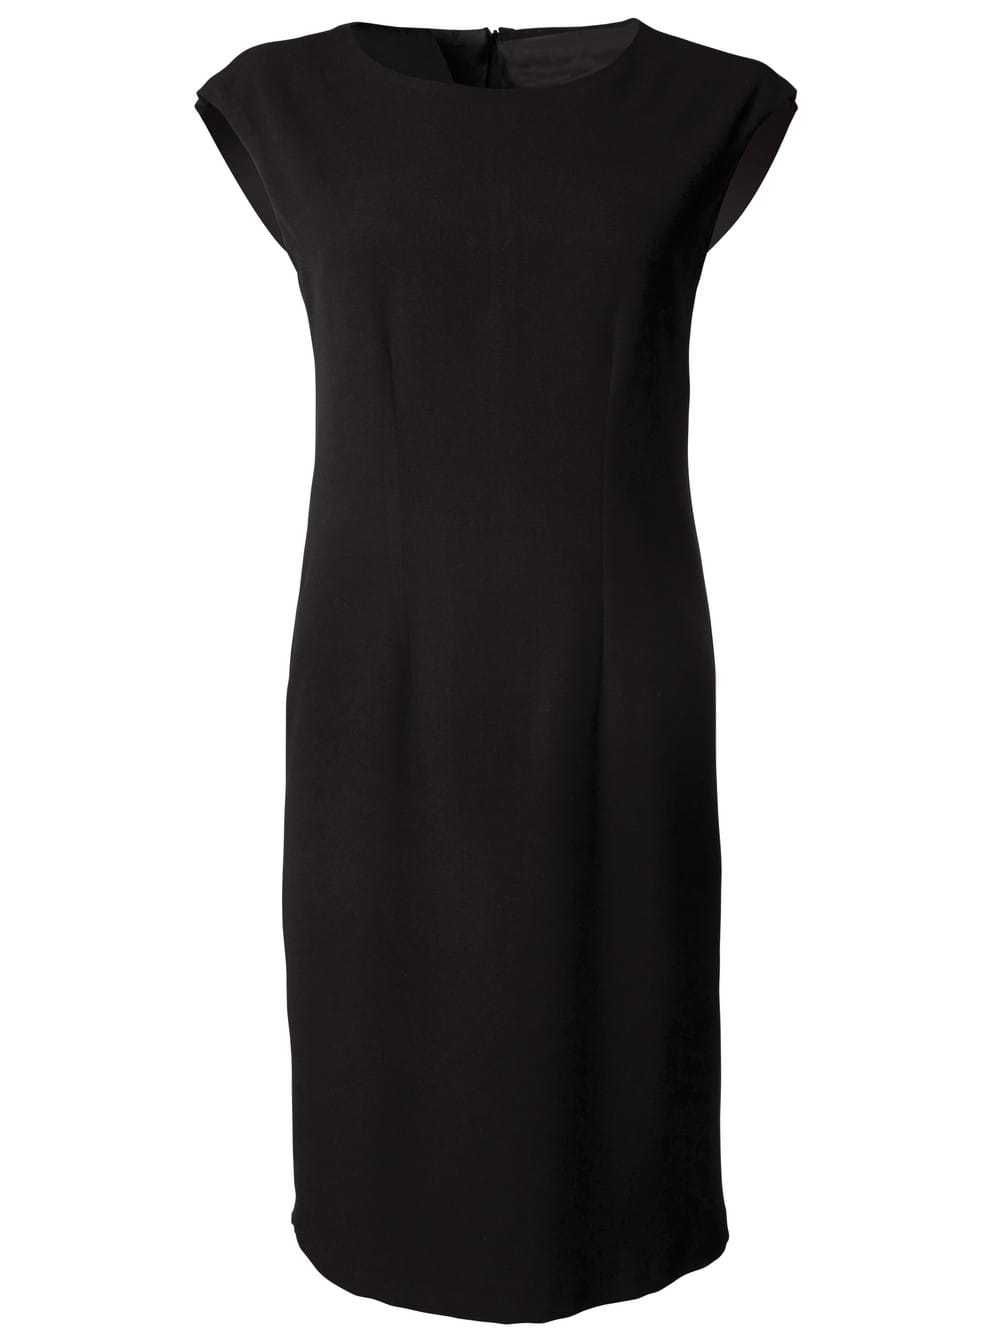 Kendal 505 S/Less Dress - Black